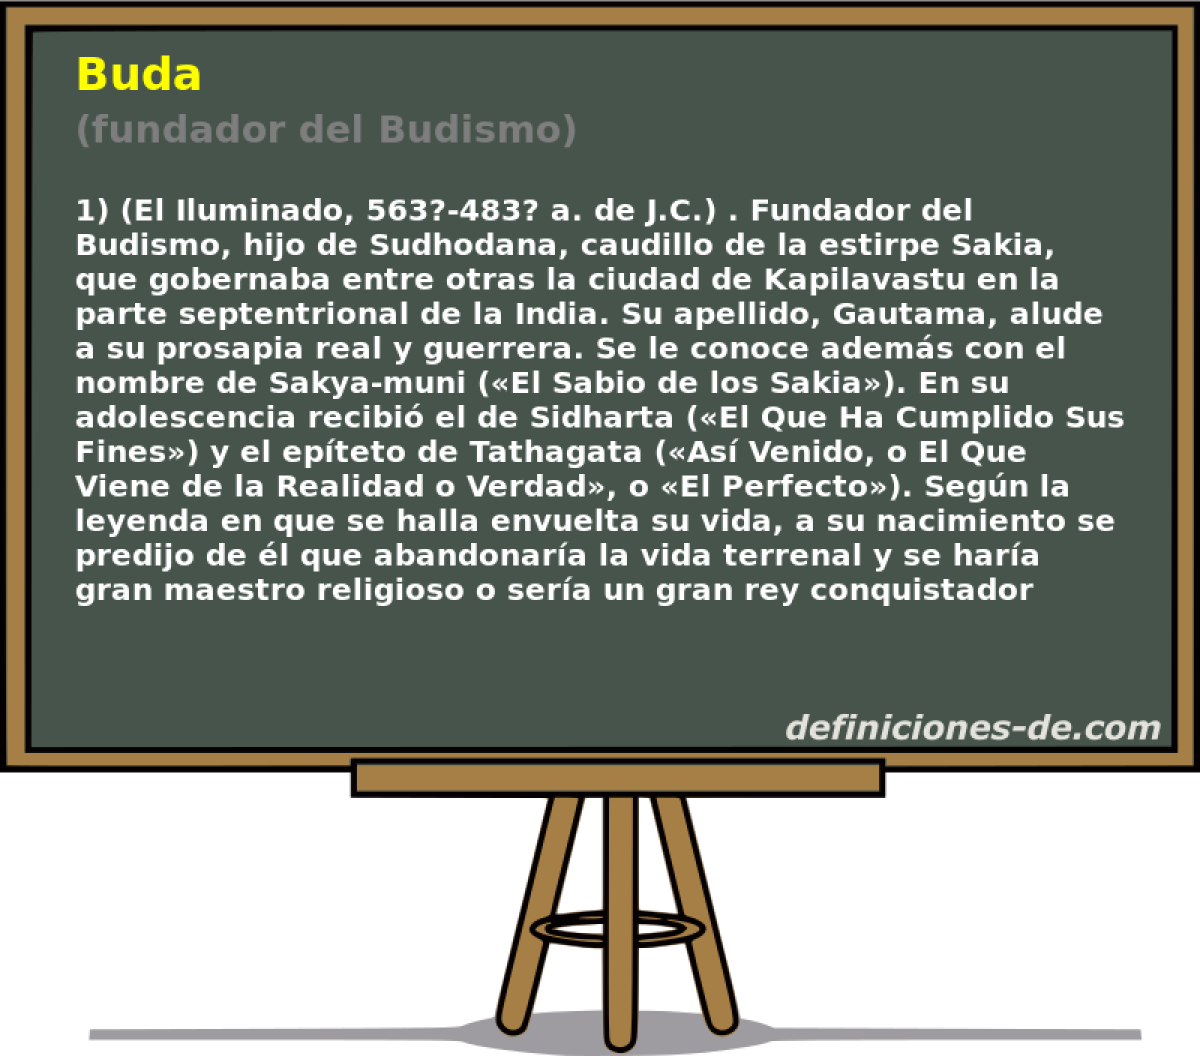 Buda (fundador del Budismo)